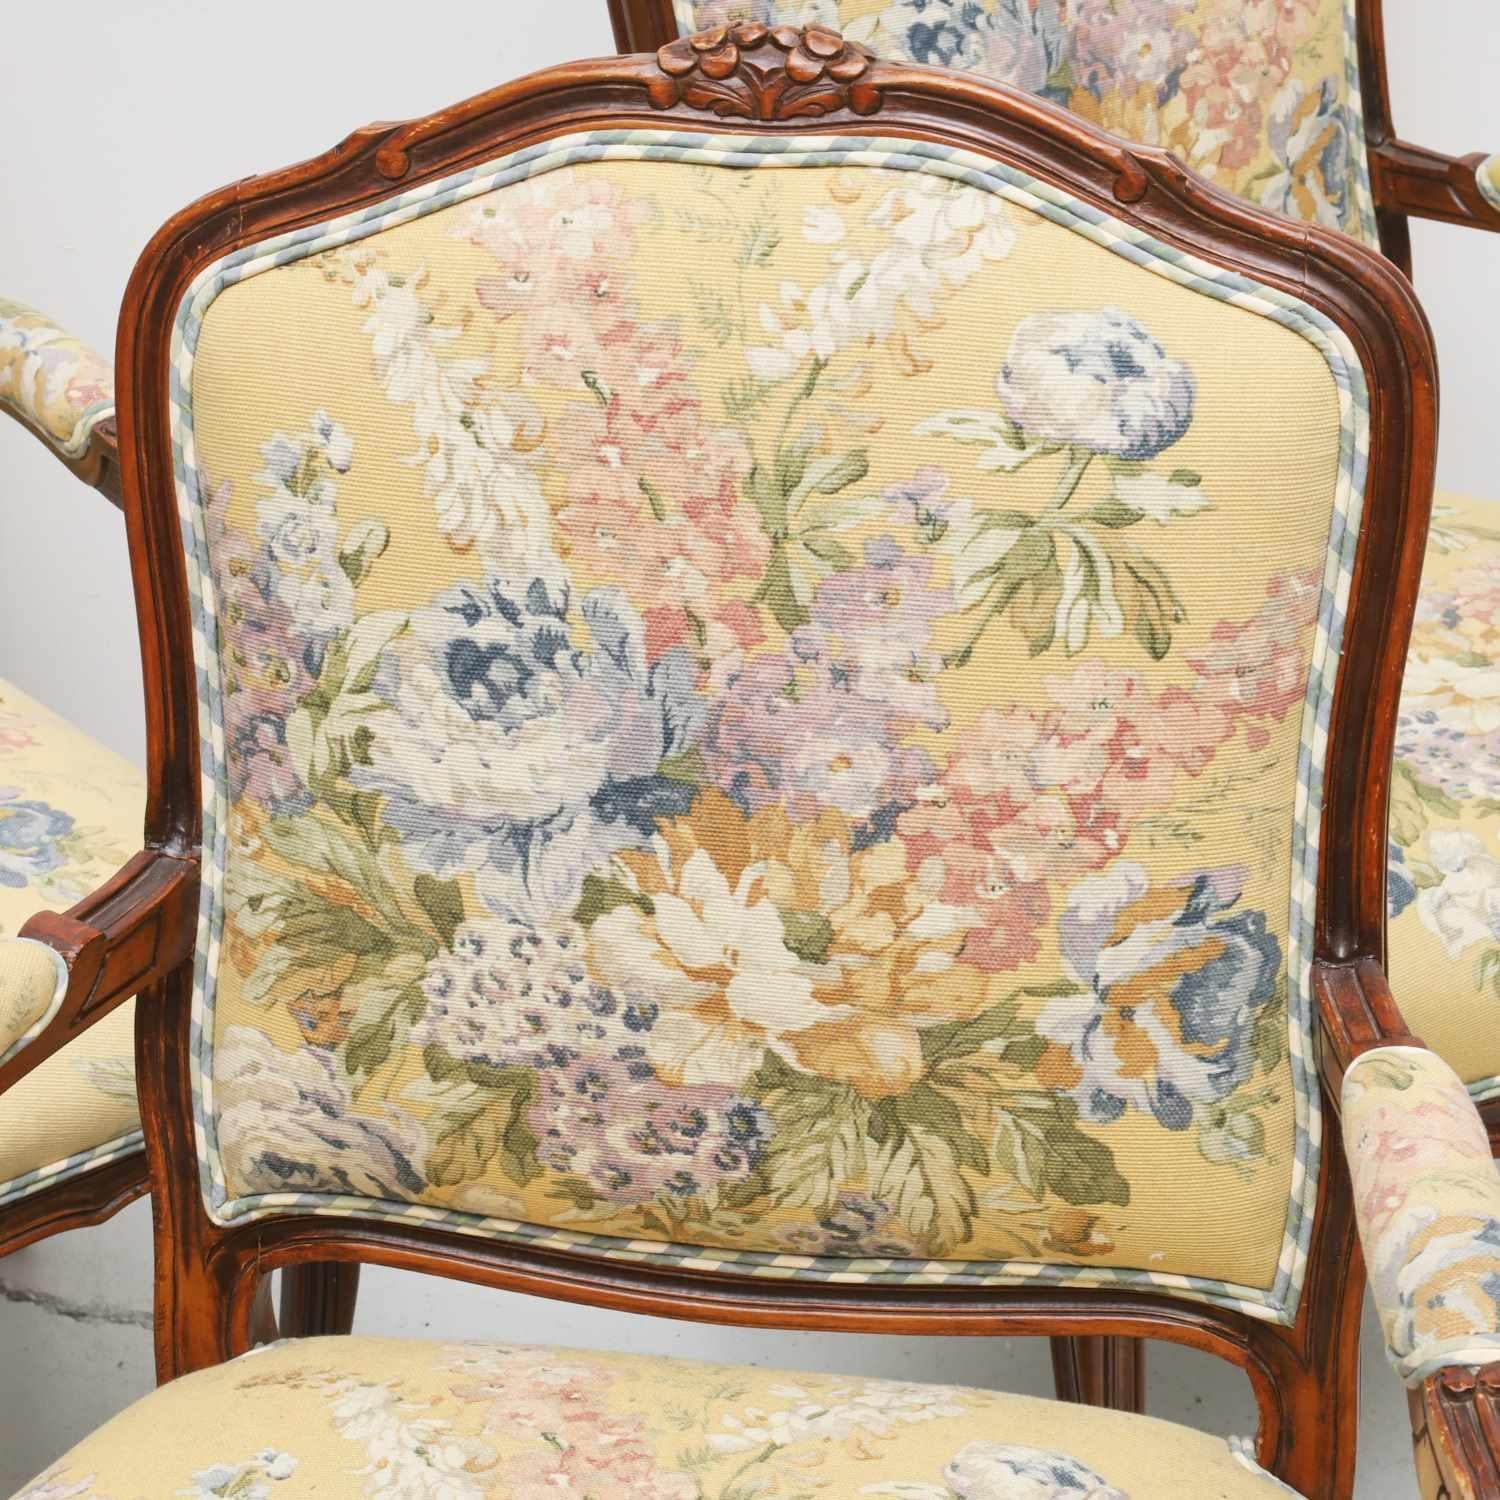 Spätes 20. Jh., vier Sessel im Louis-XV-Stil, gepolstert im Stil von Blumengobelins, mit blauen, blassgrünen und weißen Gingham-Rückenlehnen und Keder, nicht gekennzeichnet.

Abmessungen:
40 